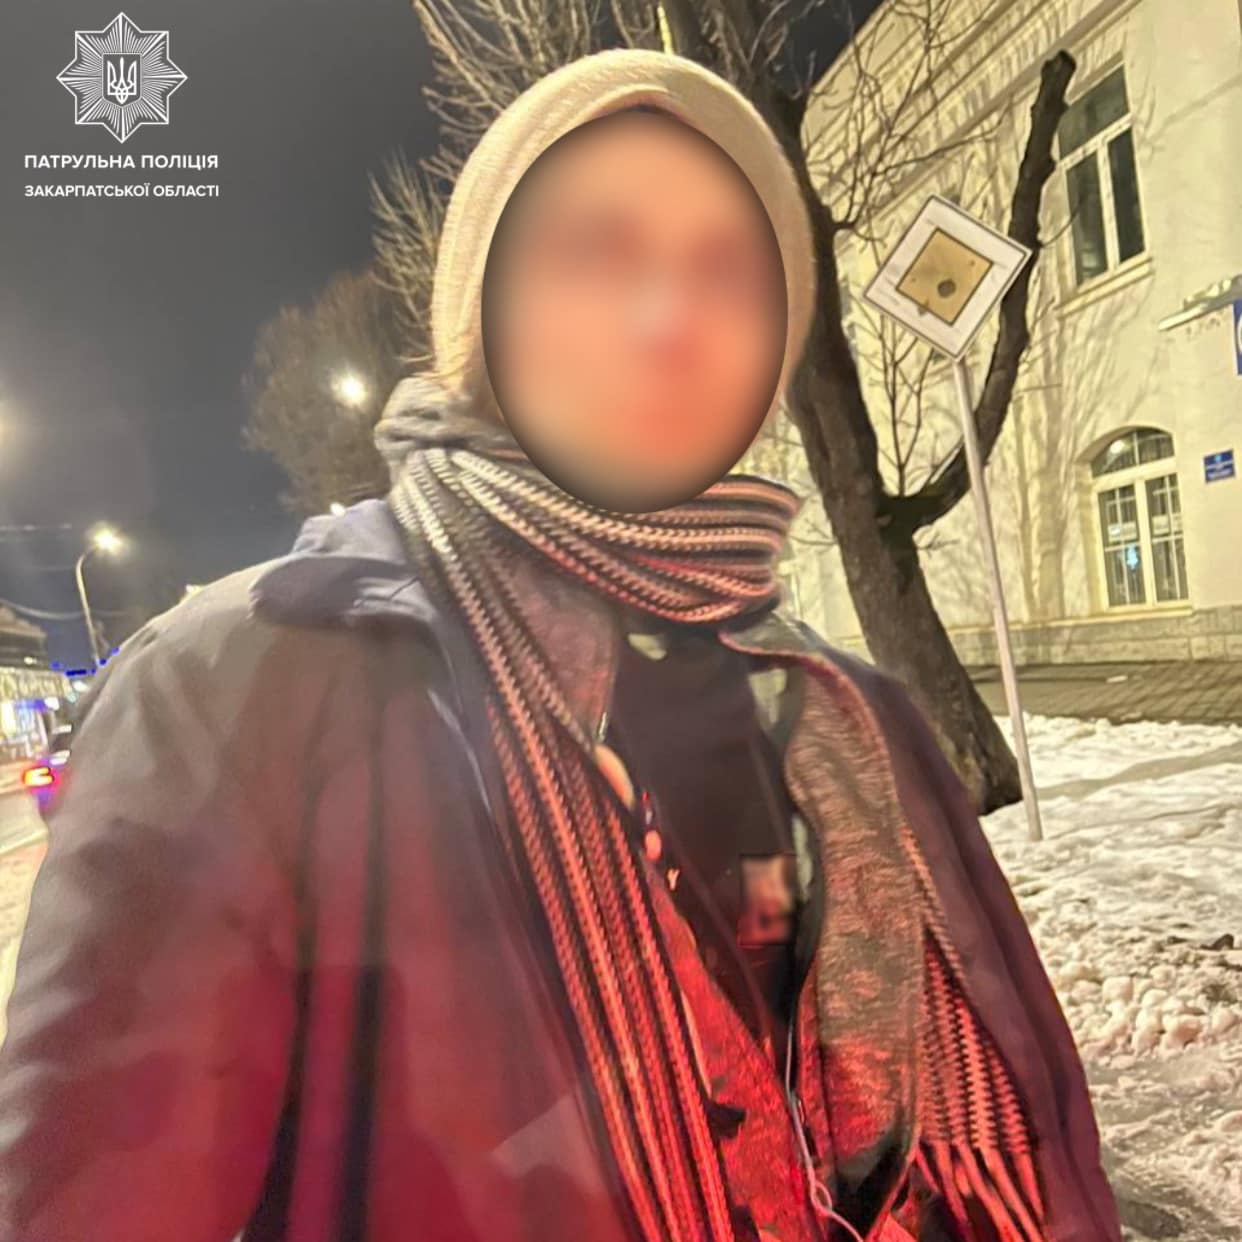 Вчера около 23:00 инспекторы заметили подозрительного человека на улице Льва Толстого в Ужгороде.